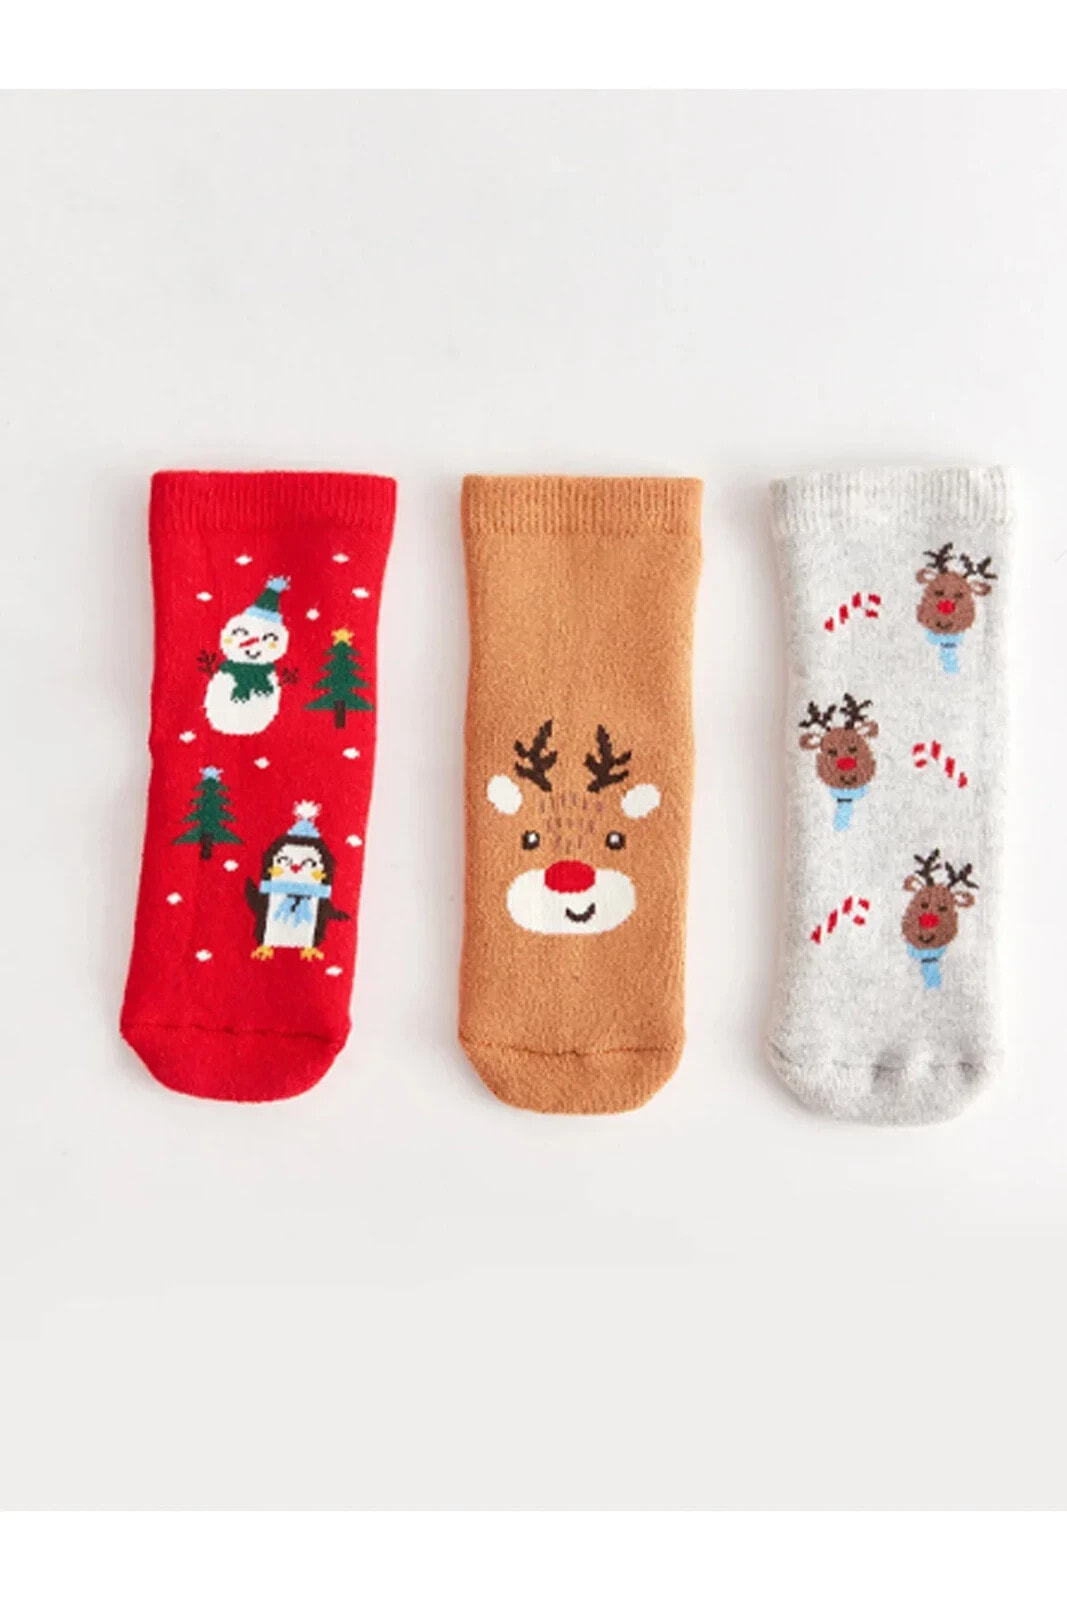 Yılbaşı Temalı Erkek Bebek Soket Çorap 3'lü Noel Yılbaşı Çorapları